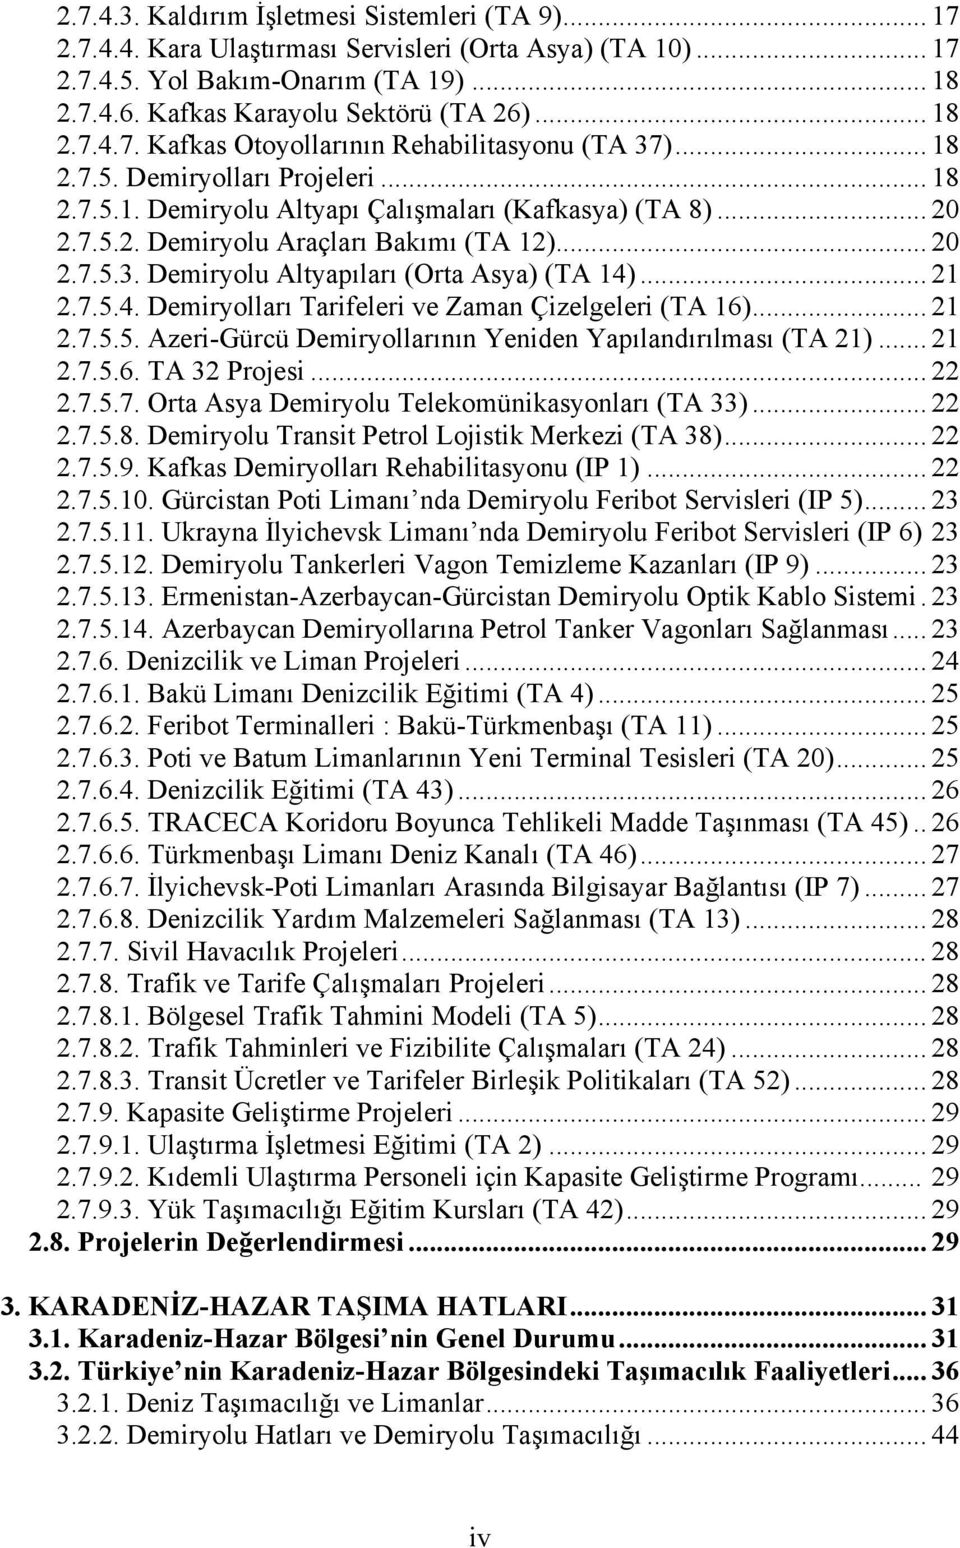 .. 20 2.7.5.3. Demiryolu Altyapıları (Orta Asya) (TA 14)... 21 2.7.5.4. Demiryolları Tarifeleri ve Zaman Çizelgeleri (TA 16)... 21 2.7.5.5. Azeri-Gürcü Demiryollarının Yeniden Yapılandırılması (TA 21).